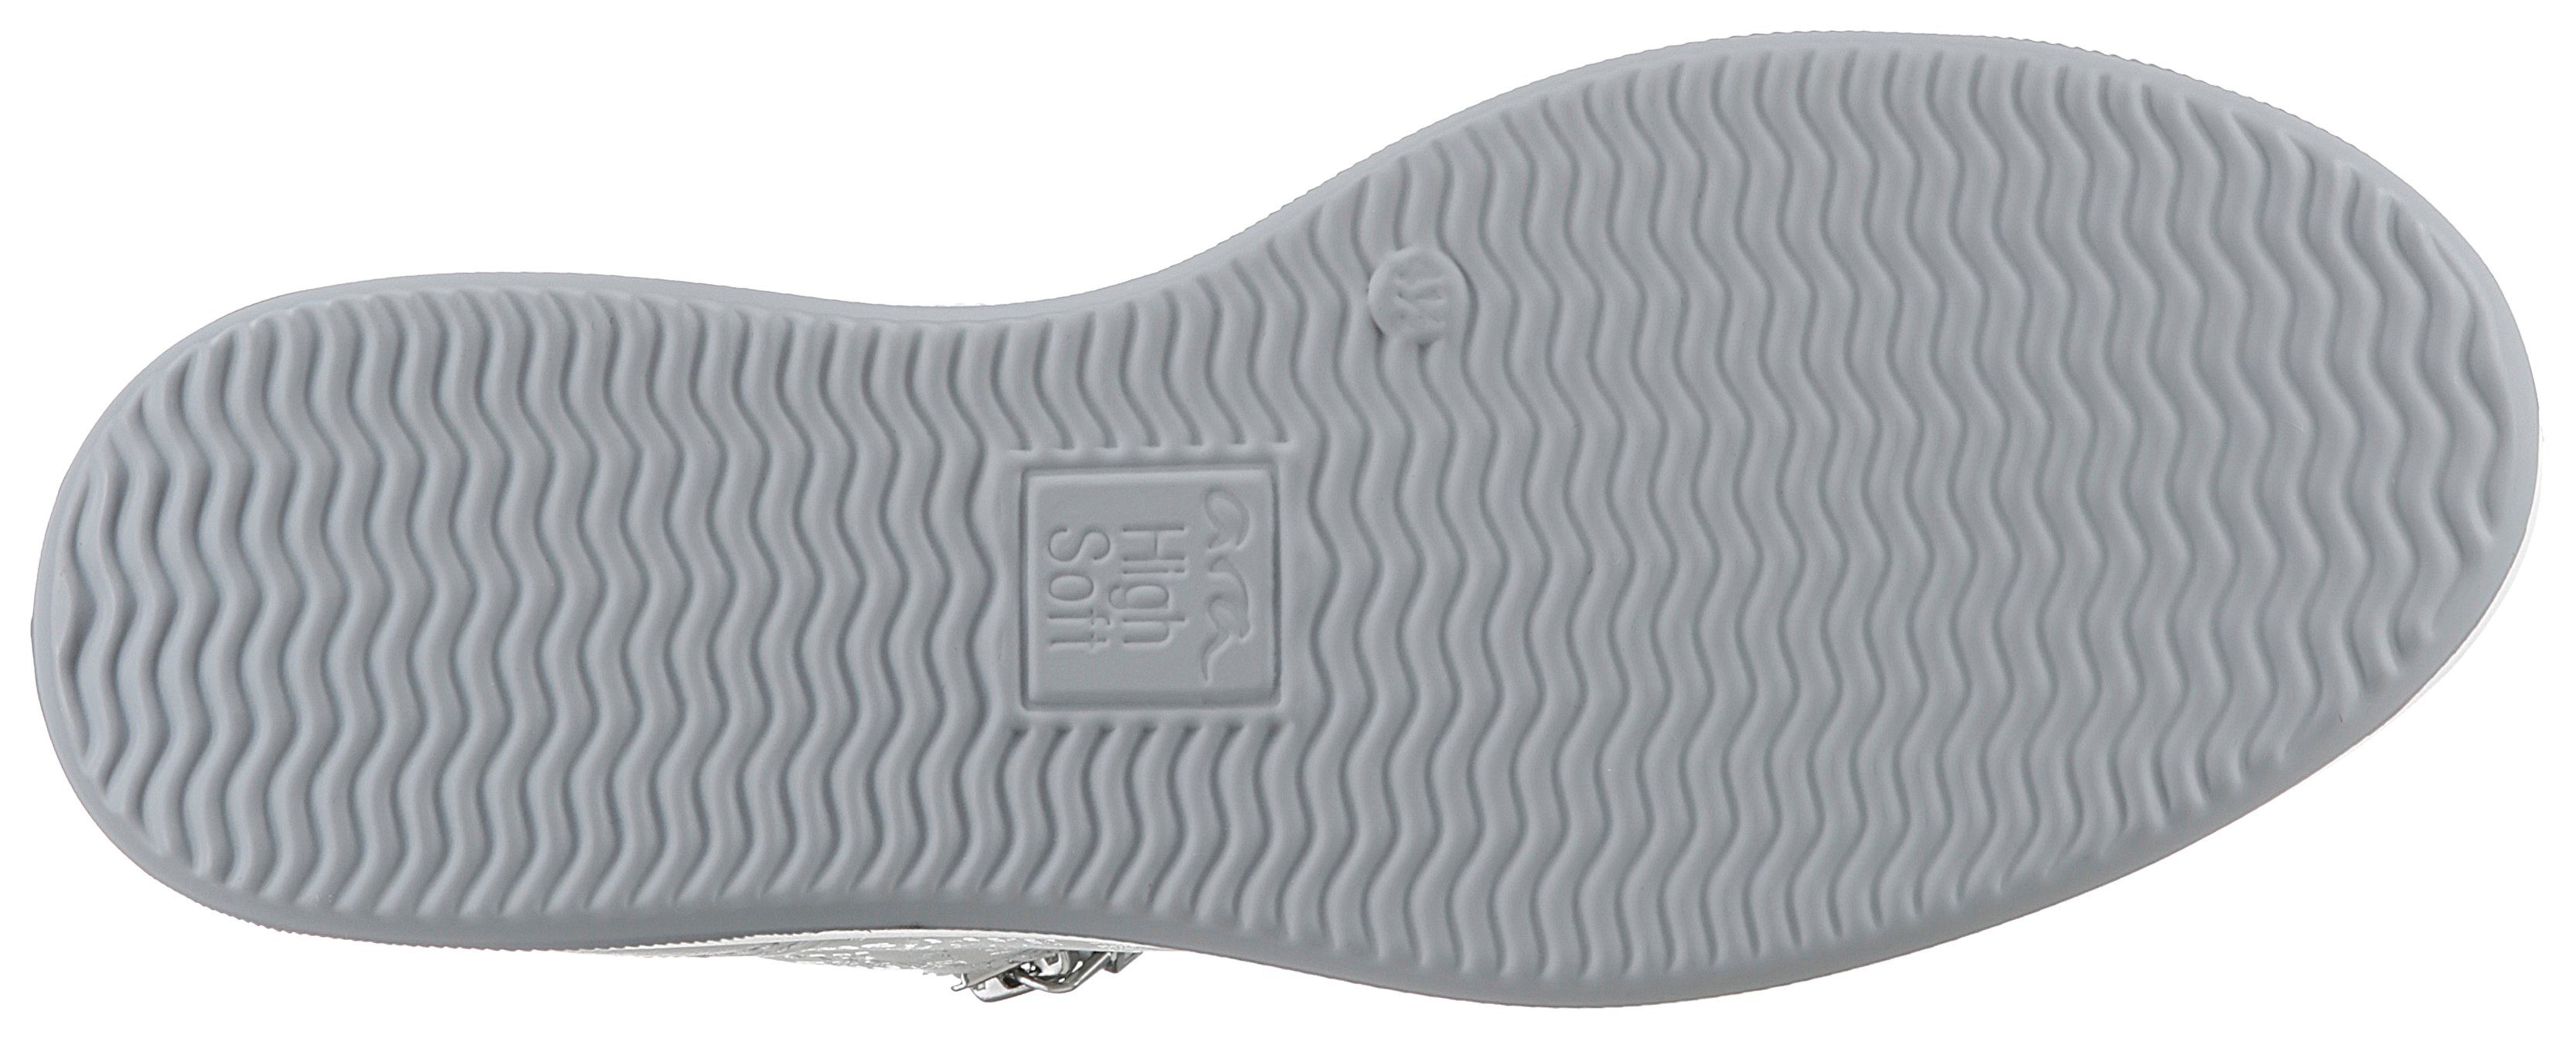 herausnehmbarem High Soft-Fußbett, Sneaker offwhite ROMA Ara mit H-Weite